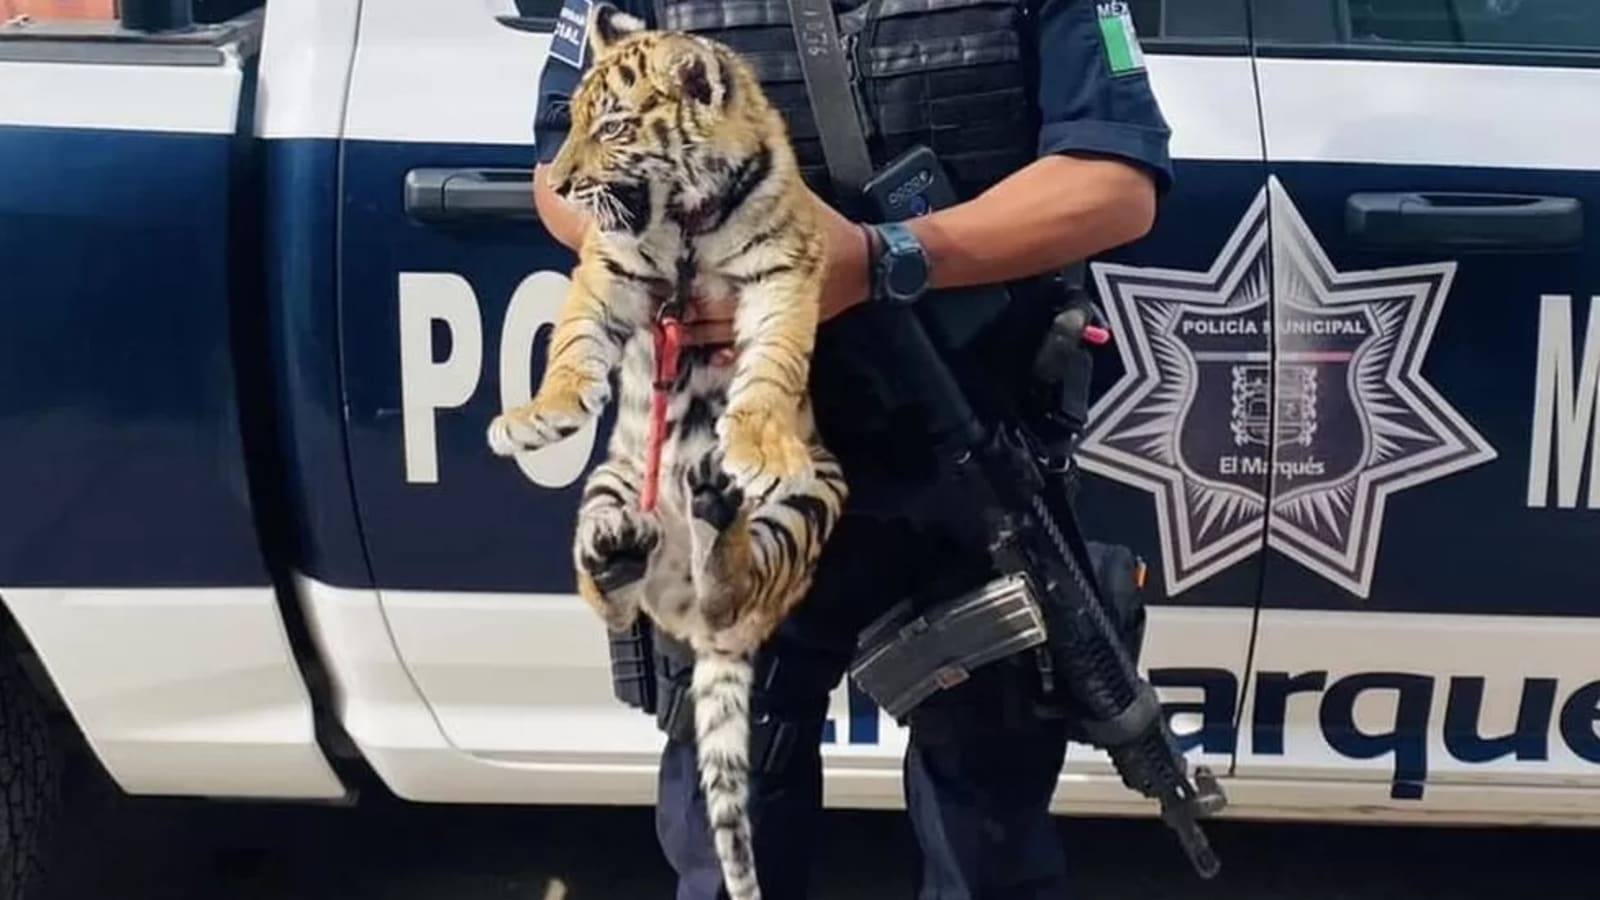 Harimau ditemukan di bagasi